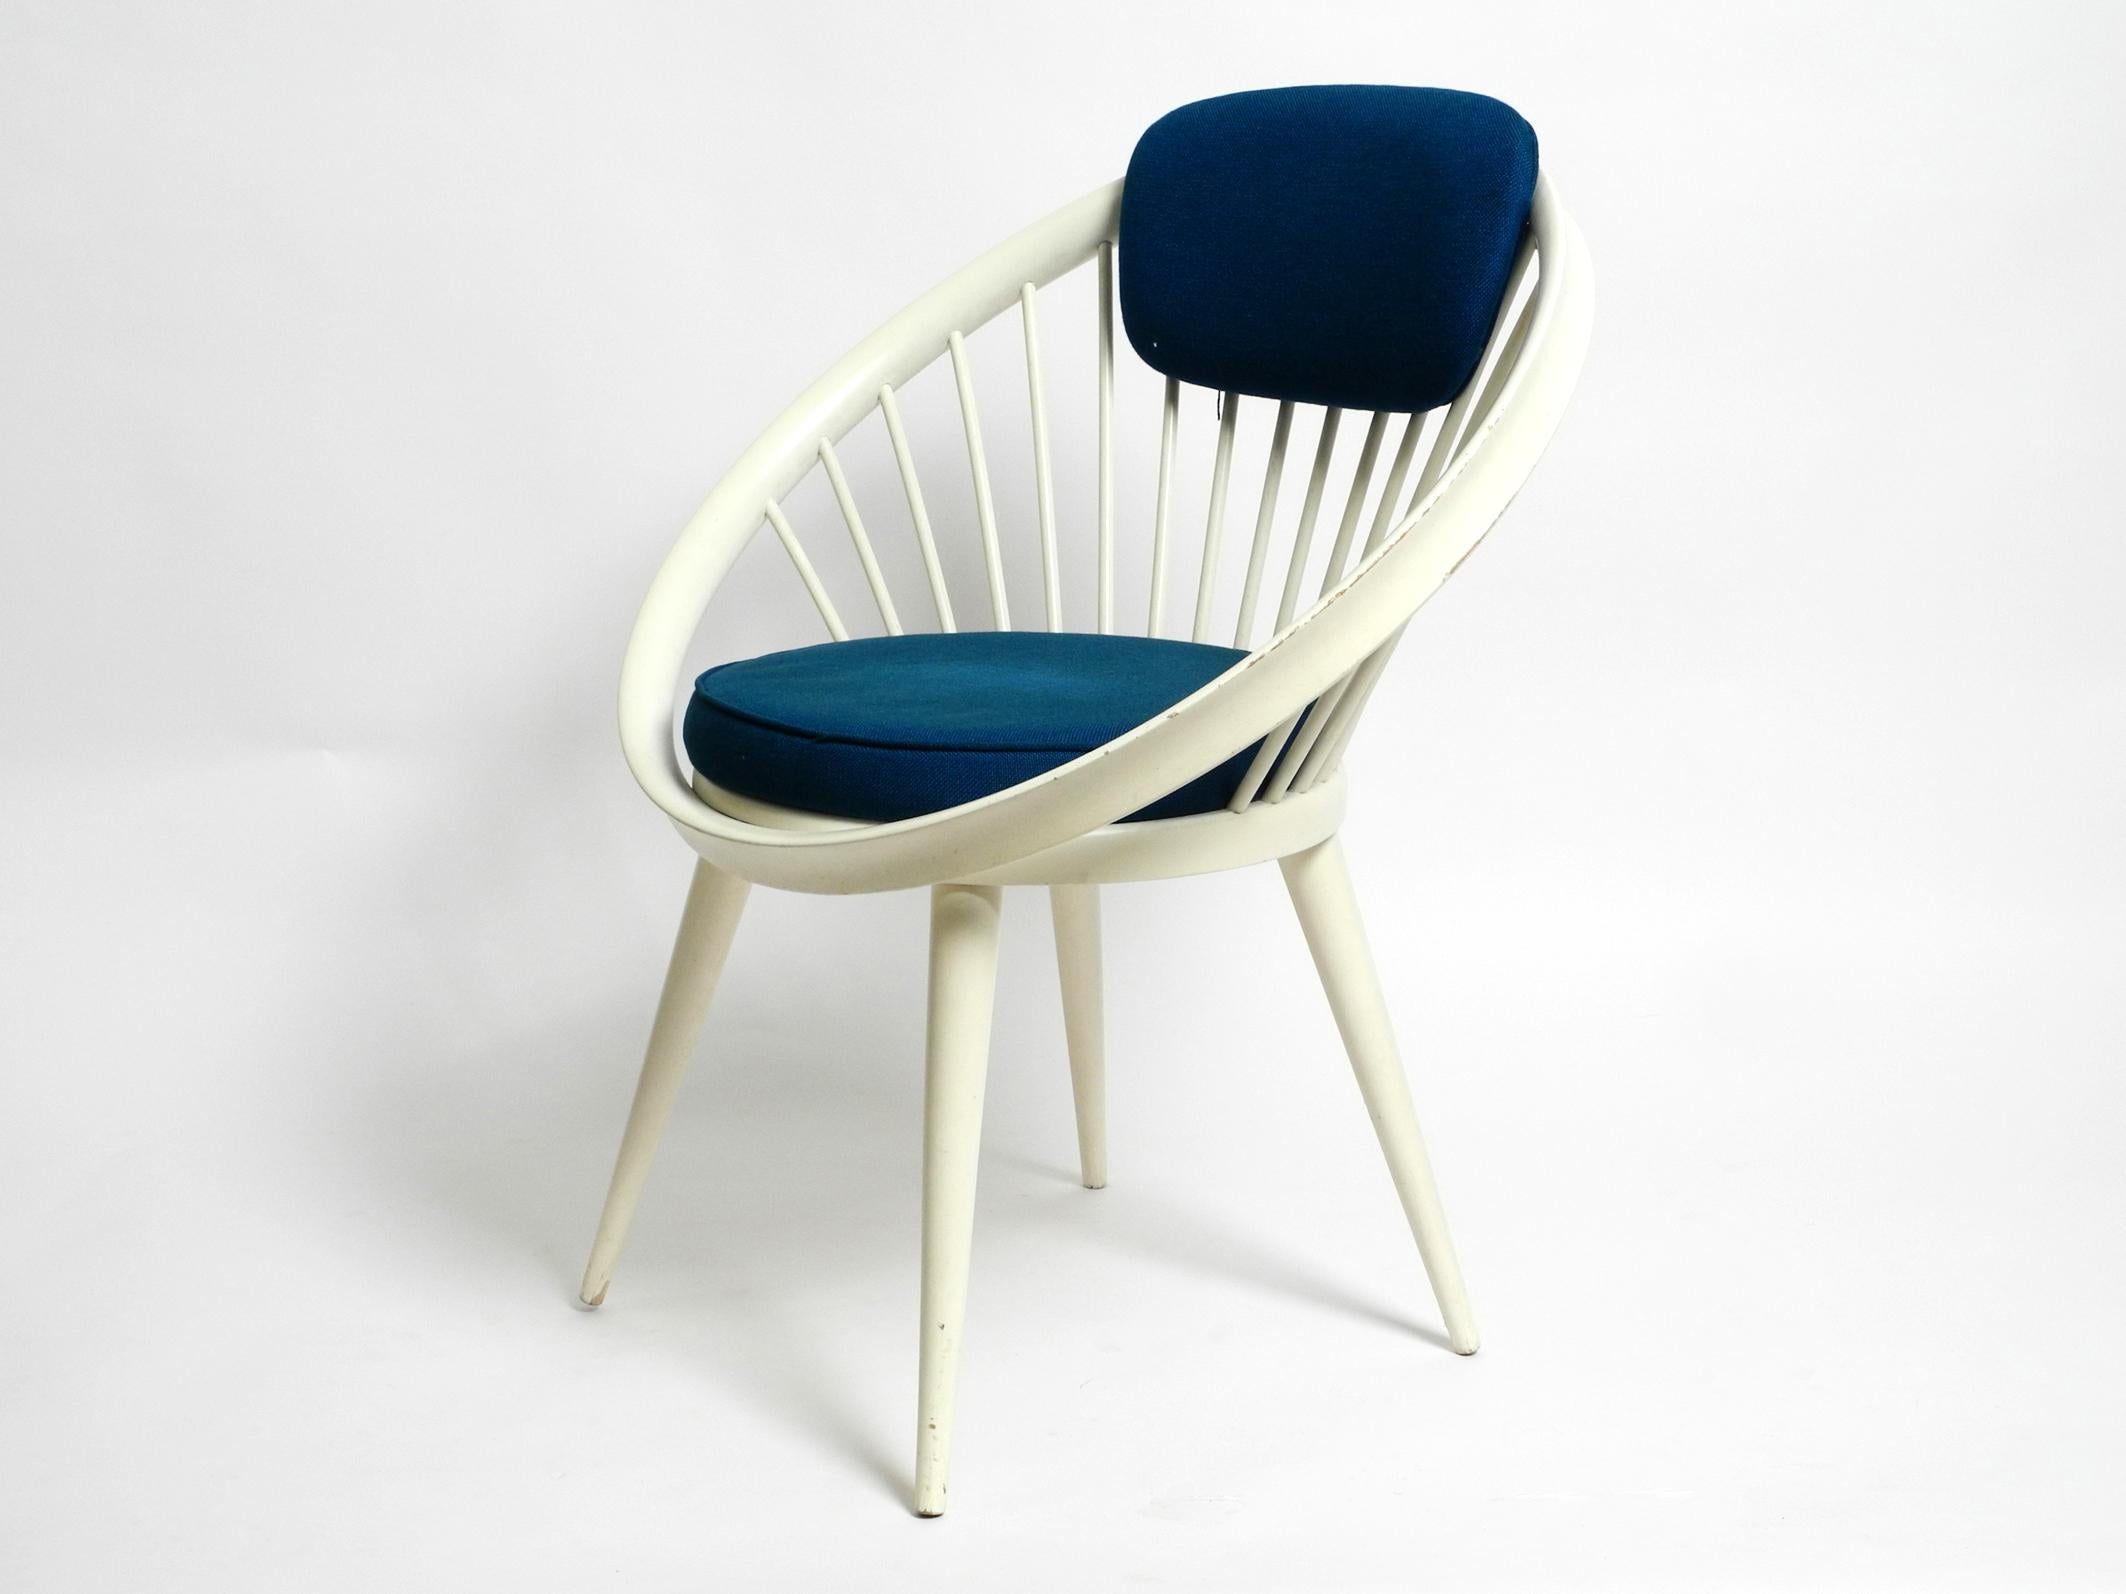 Schöner seltener originaler 1950er Jahre Circle Chair von Yngve Ekström für Swedese. Hergestellt in Schweden.
Gestell aus Massivholz, weiß lackiert, mit dunkelblauer Original-Polsterung.
Sehr schöner, typisch skandinavischer Mid Century Design,